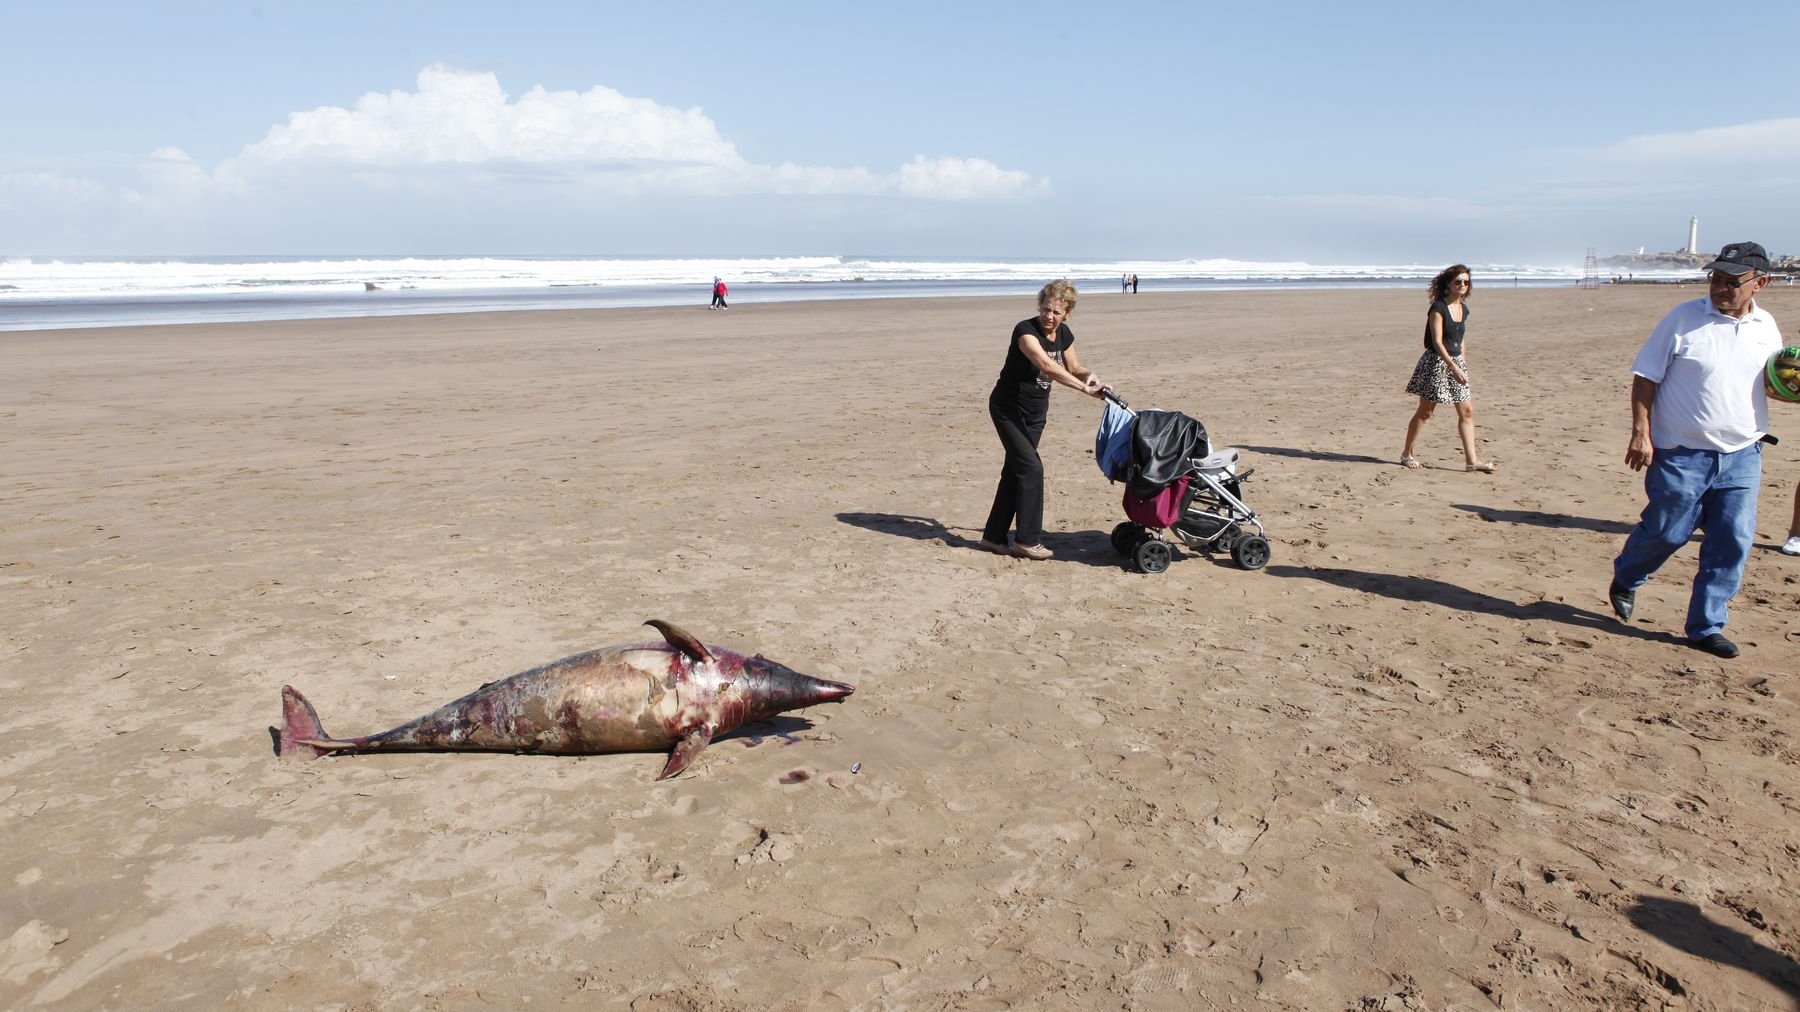 Selon un professeur de surf sur place, le petit dauphin a été retrouvé sur le sable vendredi, à 16h. Les promeneurs ont été pour le moins surpris par cette triste découverte.
